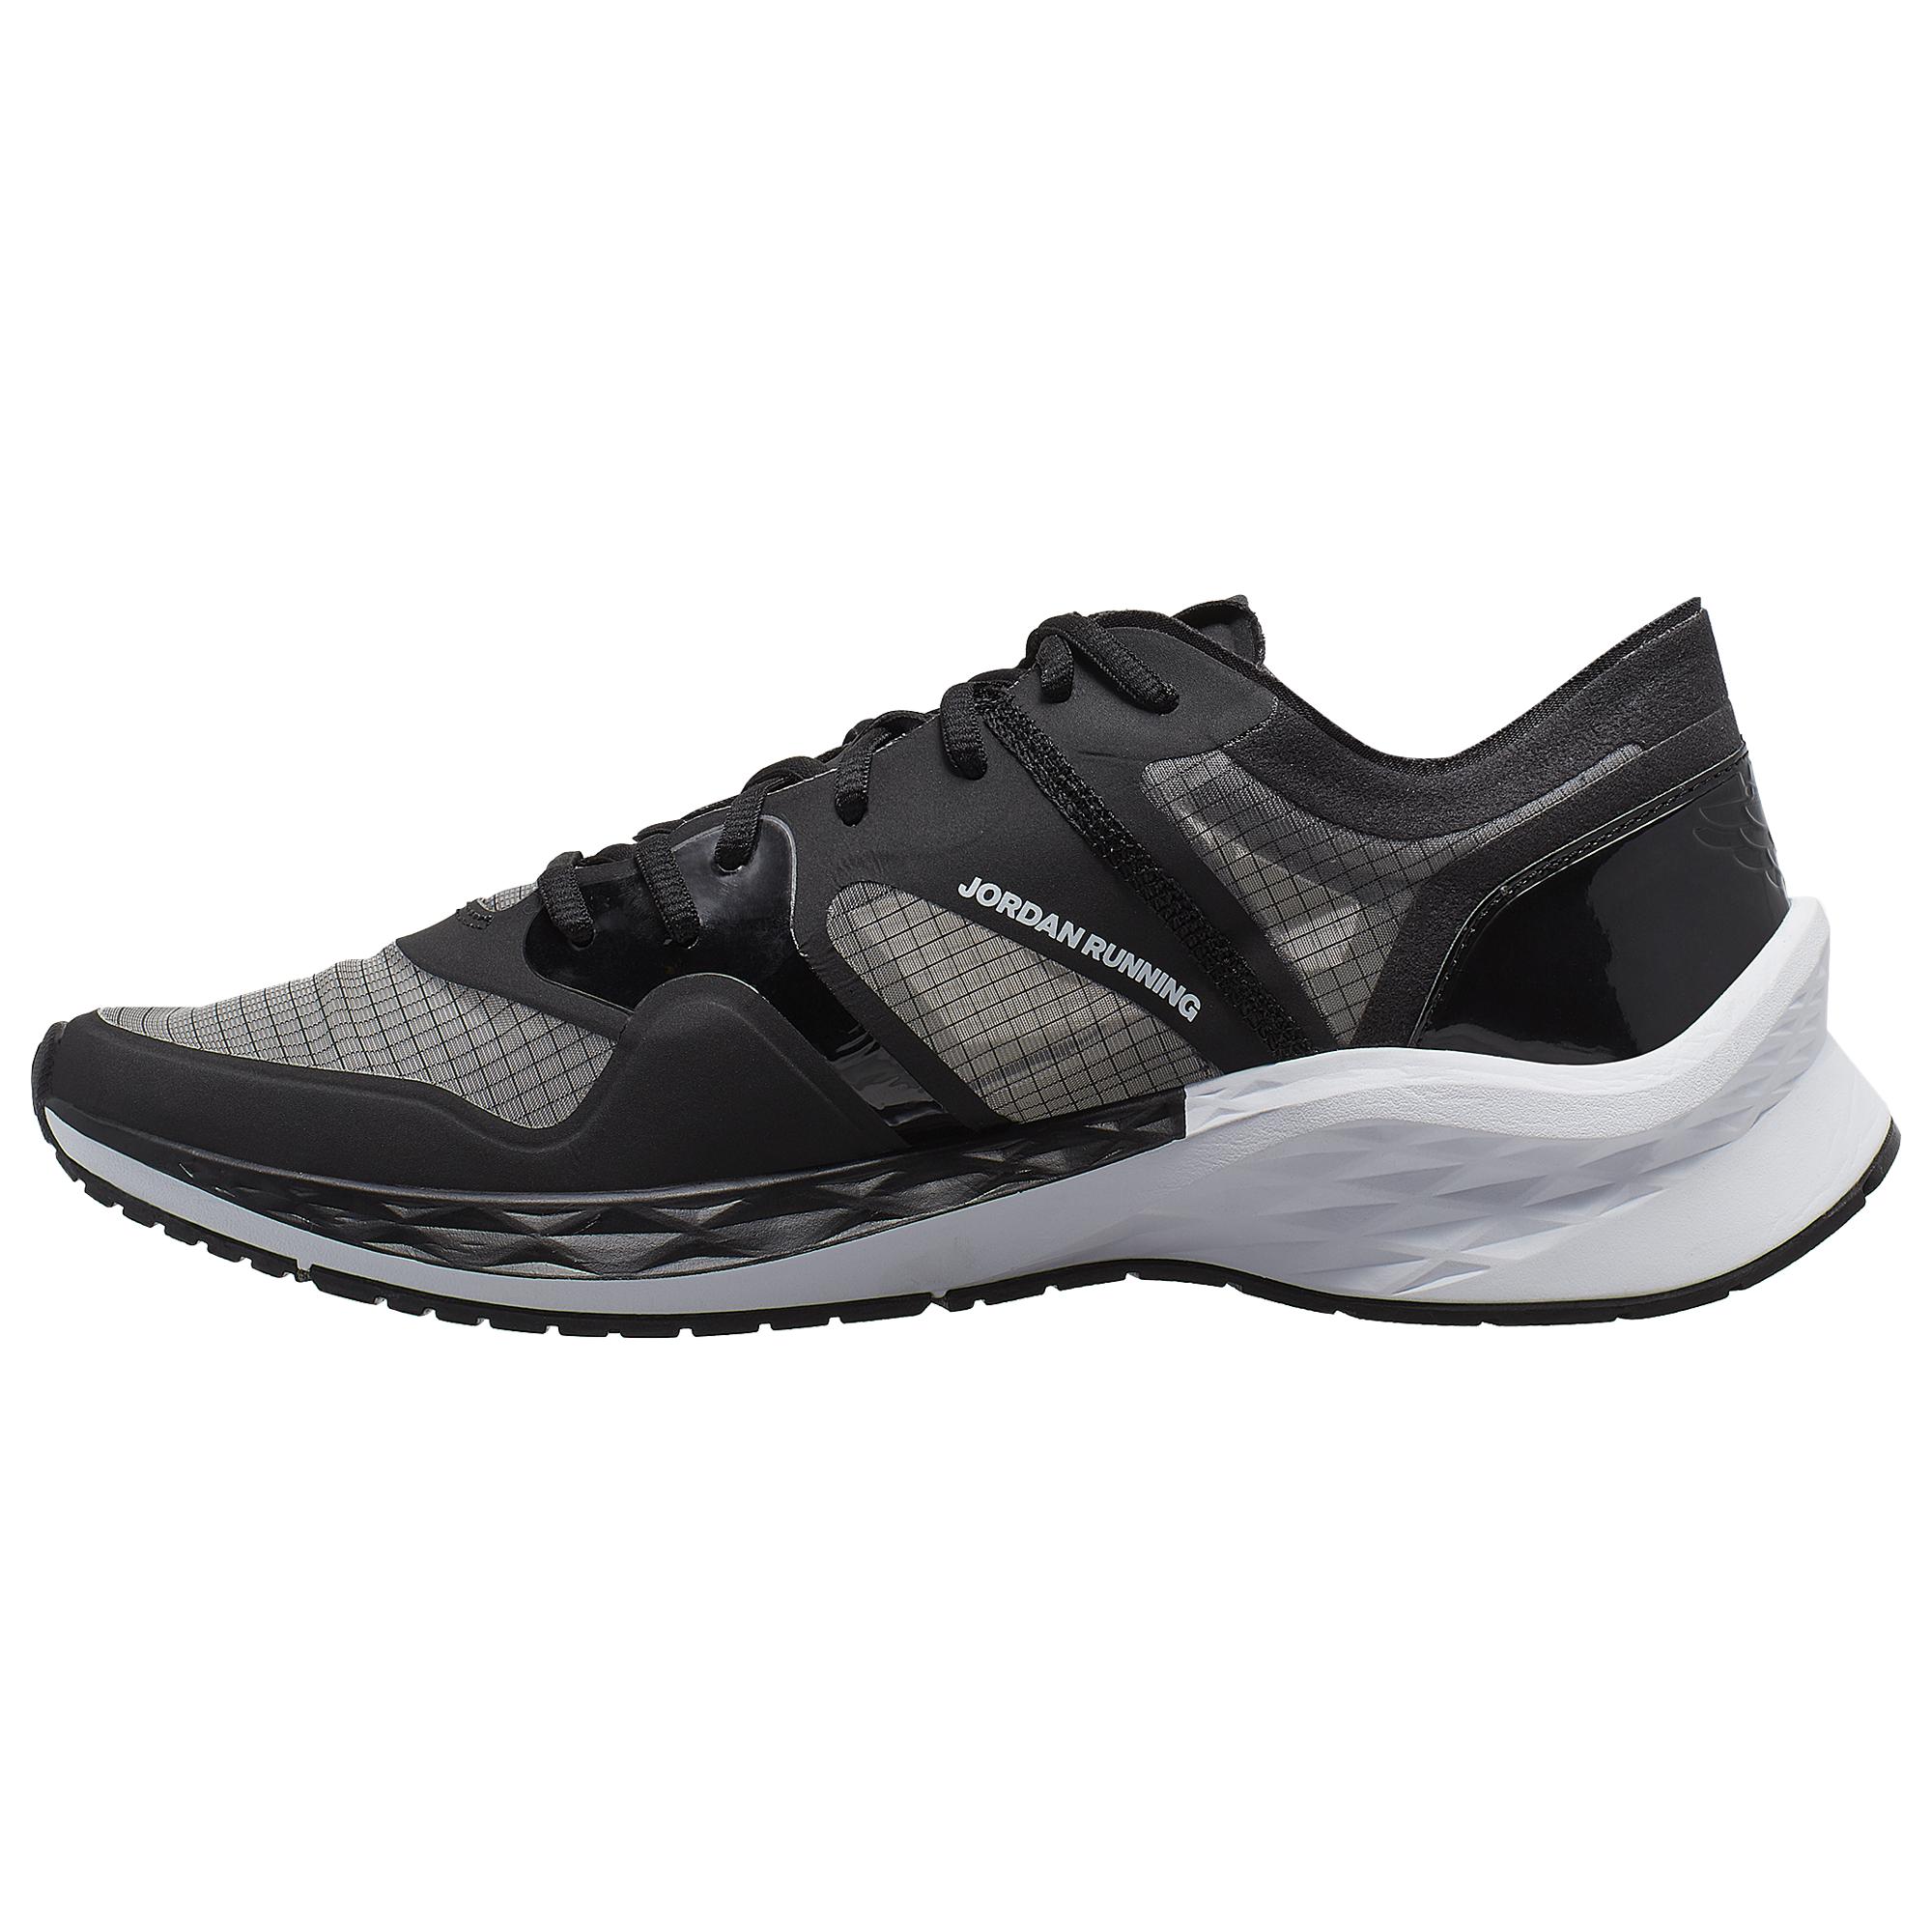 Nike Rubber Jordan Air Zoom 85 Runner Training Shoe in  Black/White/University Red (Black) for Men - Lyst